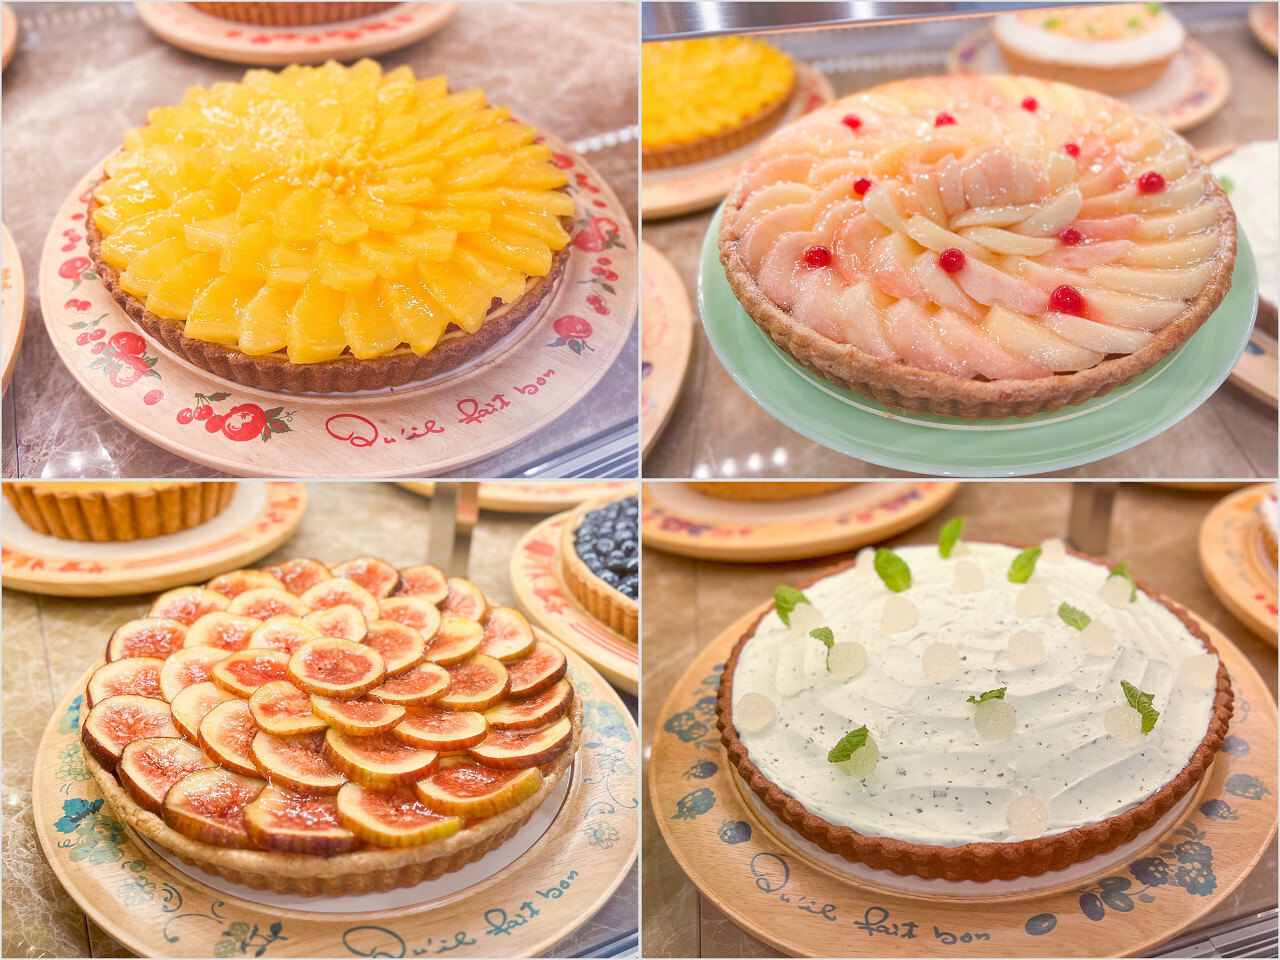 左上：「ゴールデンパインと“ル ガール”クリームチーズのタルト」、左下：「福岡県産イチジク“とよみつひめ”のタルト」、右上：「桃のタルト」、右下：「チョコレートとミントのタルト」